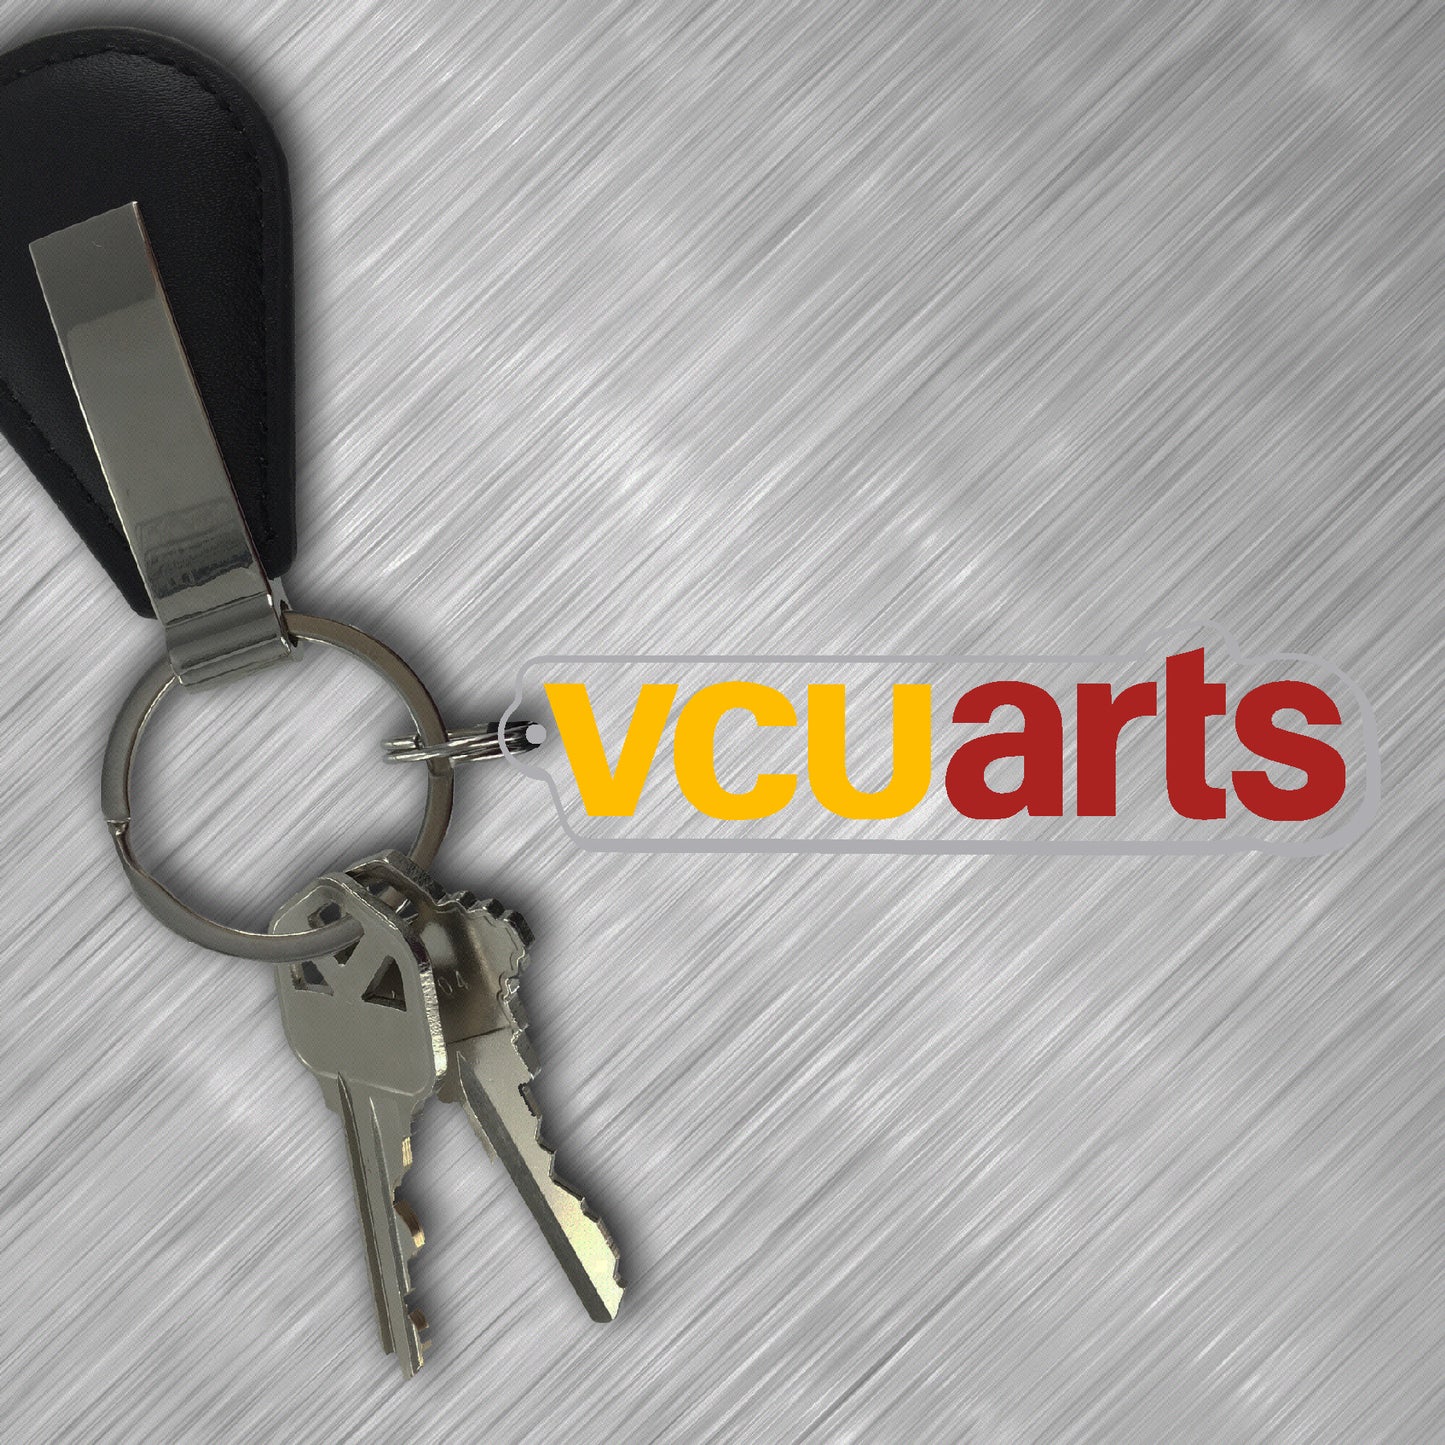 VCUarts Key Tag